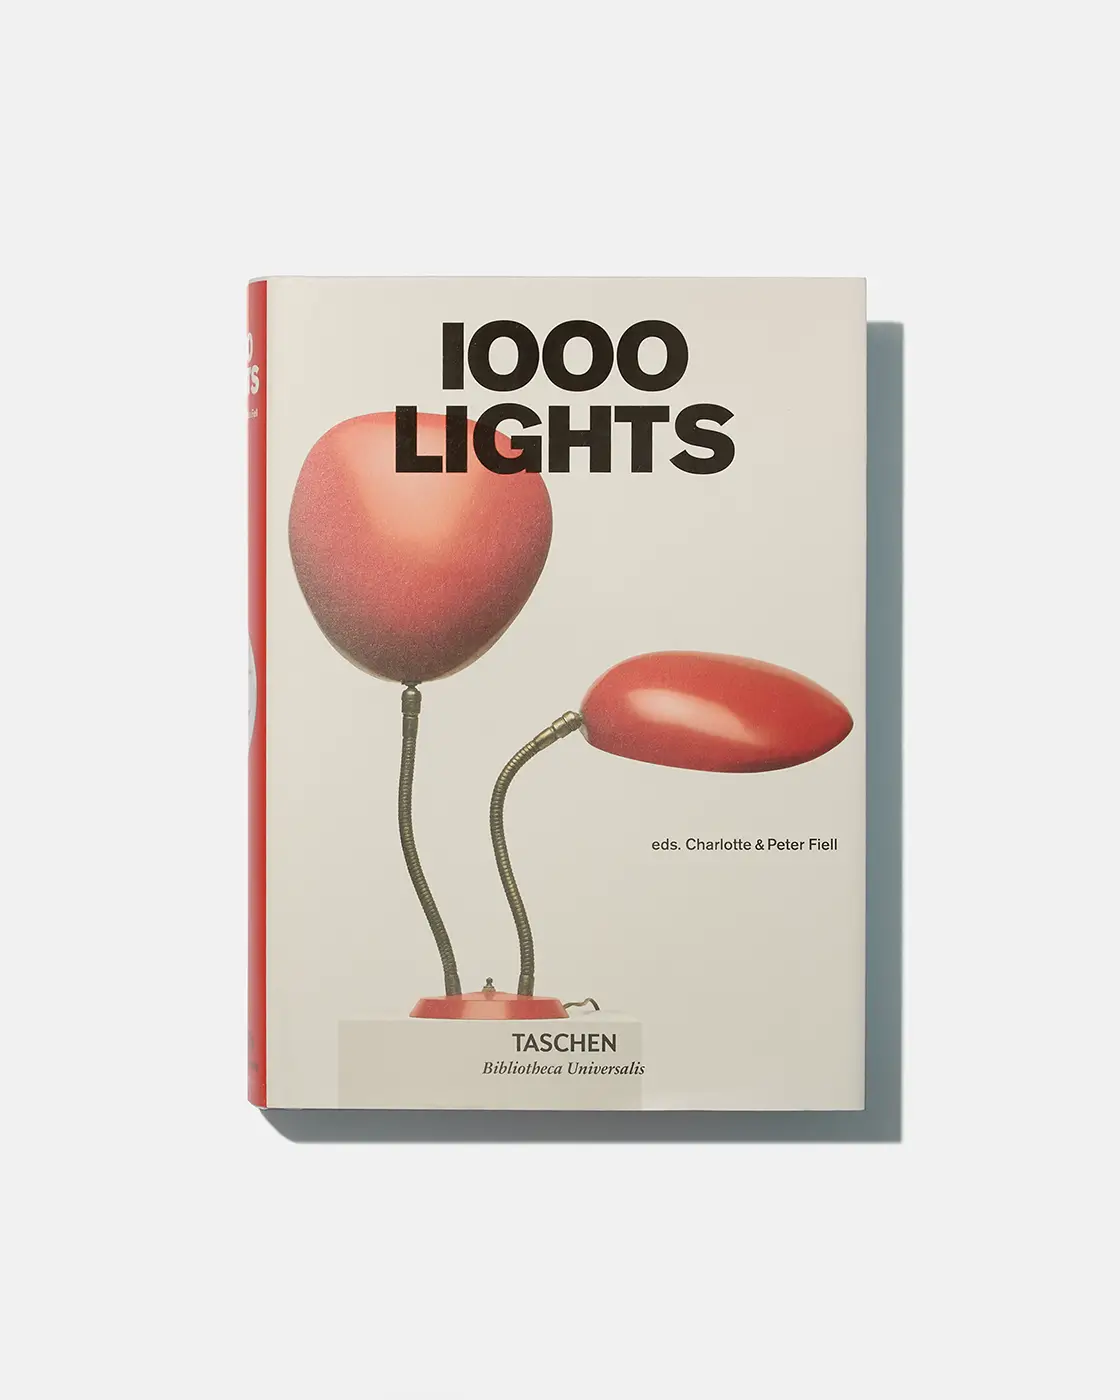 TASCHEN - 1000 Lights